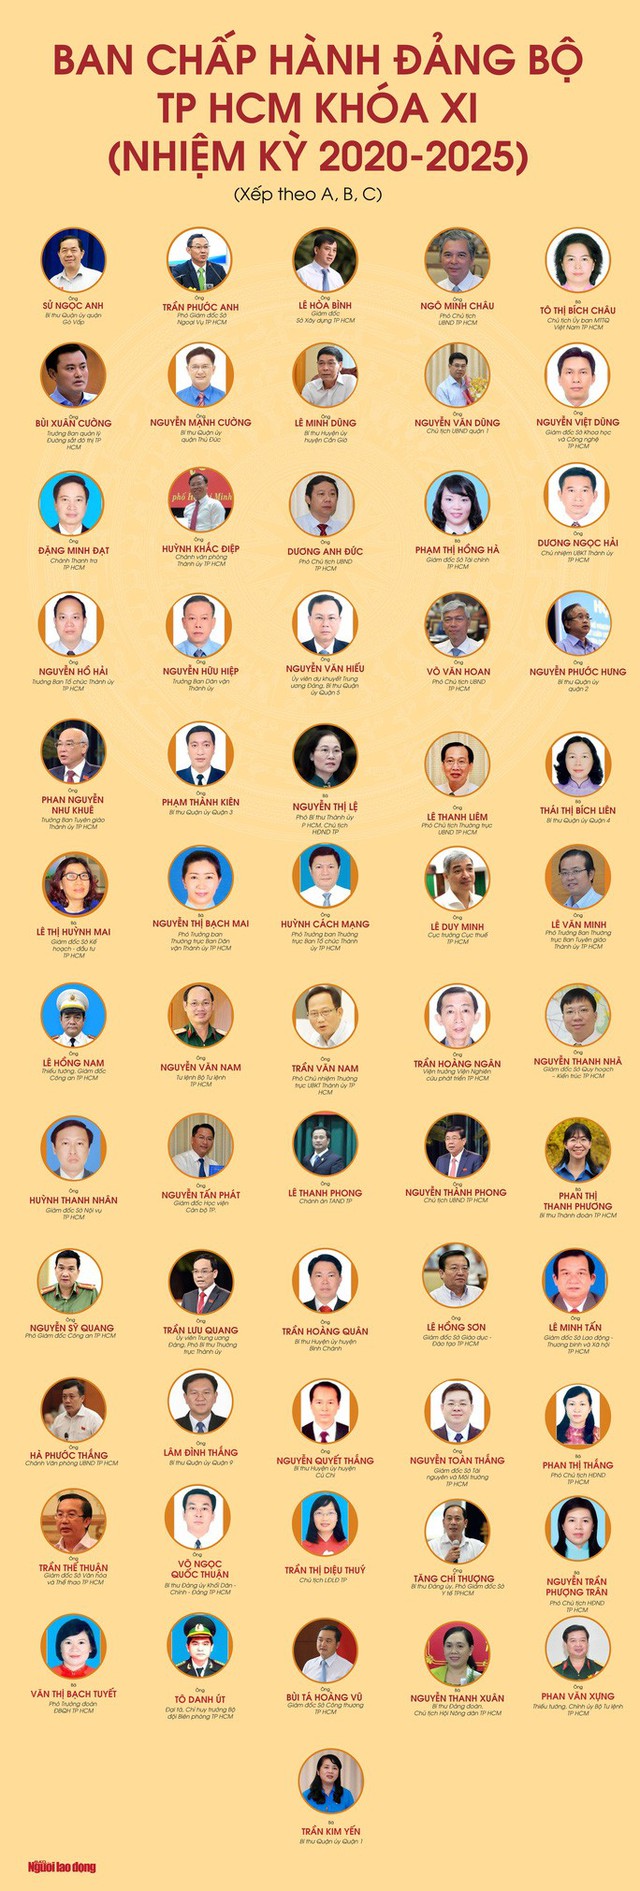 Chân dung 61 ủy viên Ban Chấp hành Đảng bộ TP HCM nhiệm kỳ 2020-2025  - Ảnh 1.